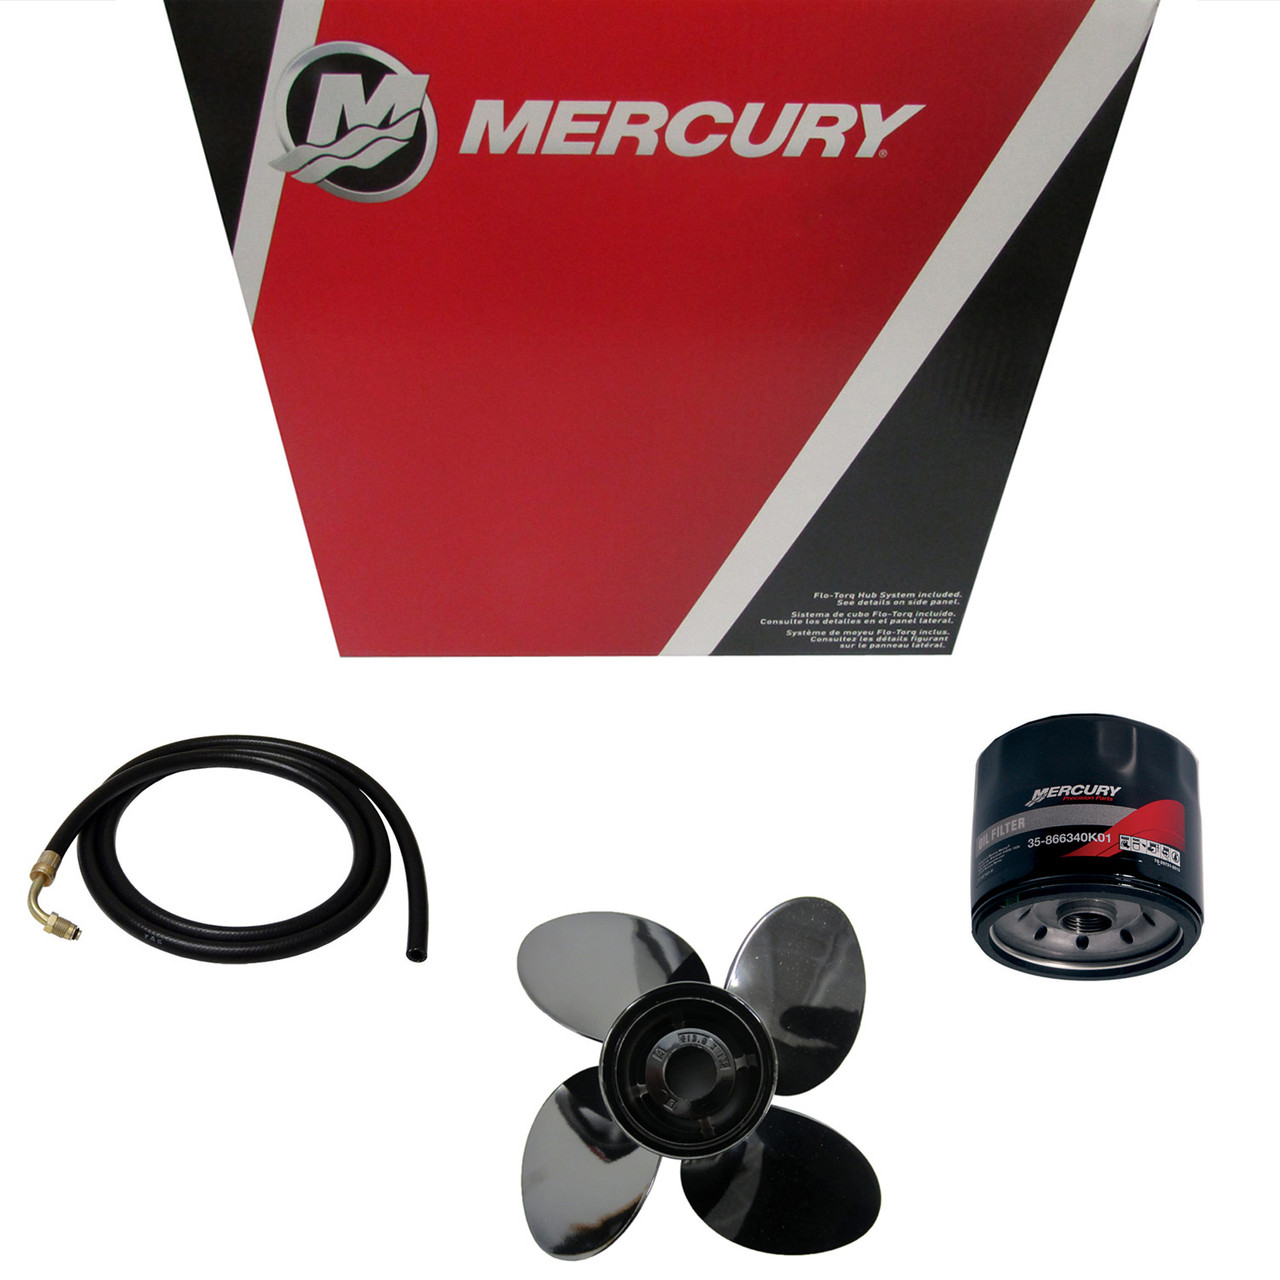 Mercury Marine / Mercruiser New OEM Coupler, 881967